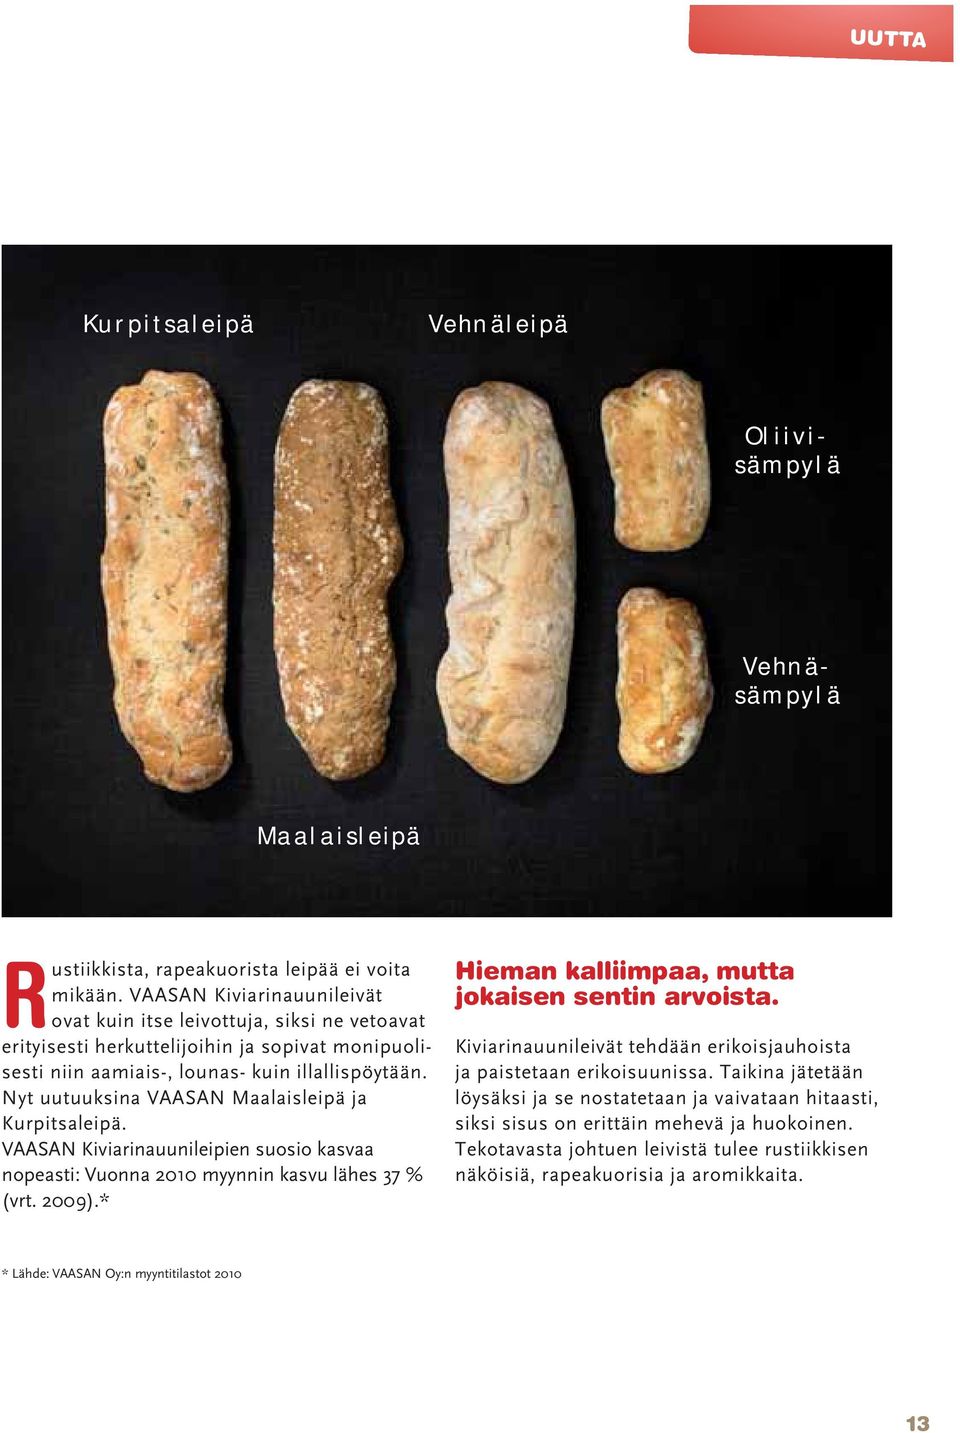 Nyt uutuuksina VAASAN Maalaisleipä ja Kurpitsaleipä. VAASAN Kiviarinauunileipien suosio kasvaa nopeasti: Vuonna 2010 myynnin kasvu lähes 37 % (vrt. 2009).